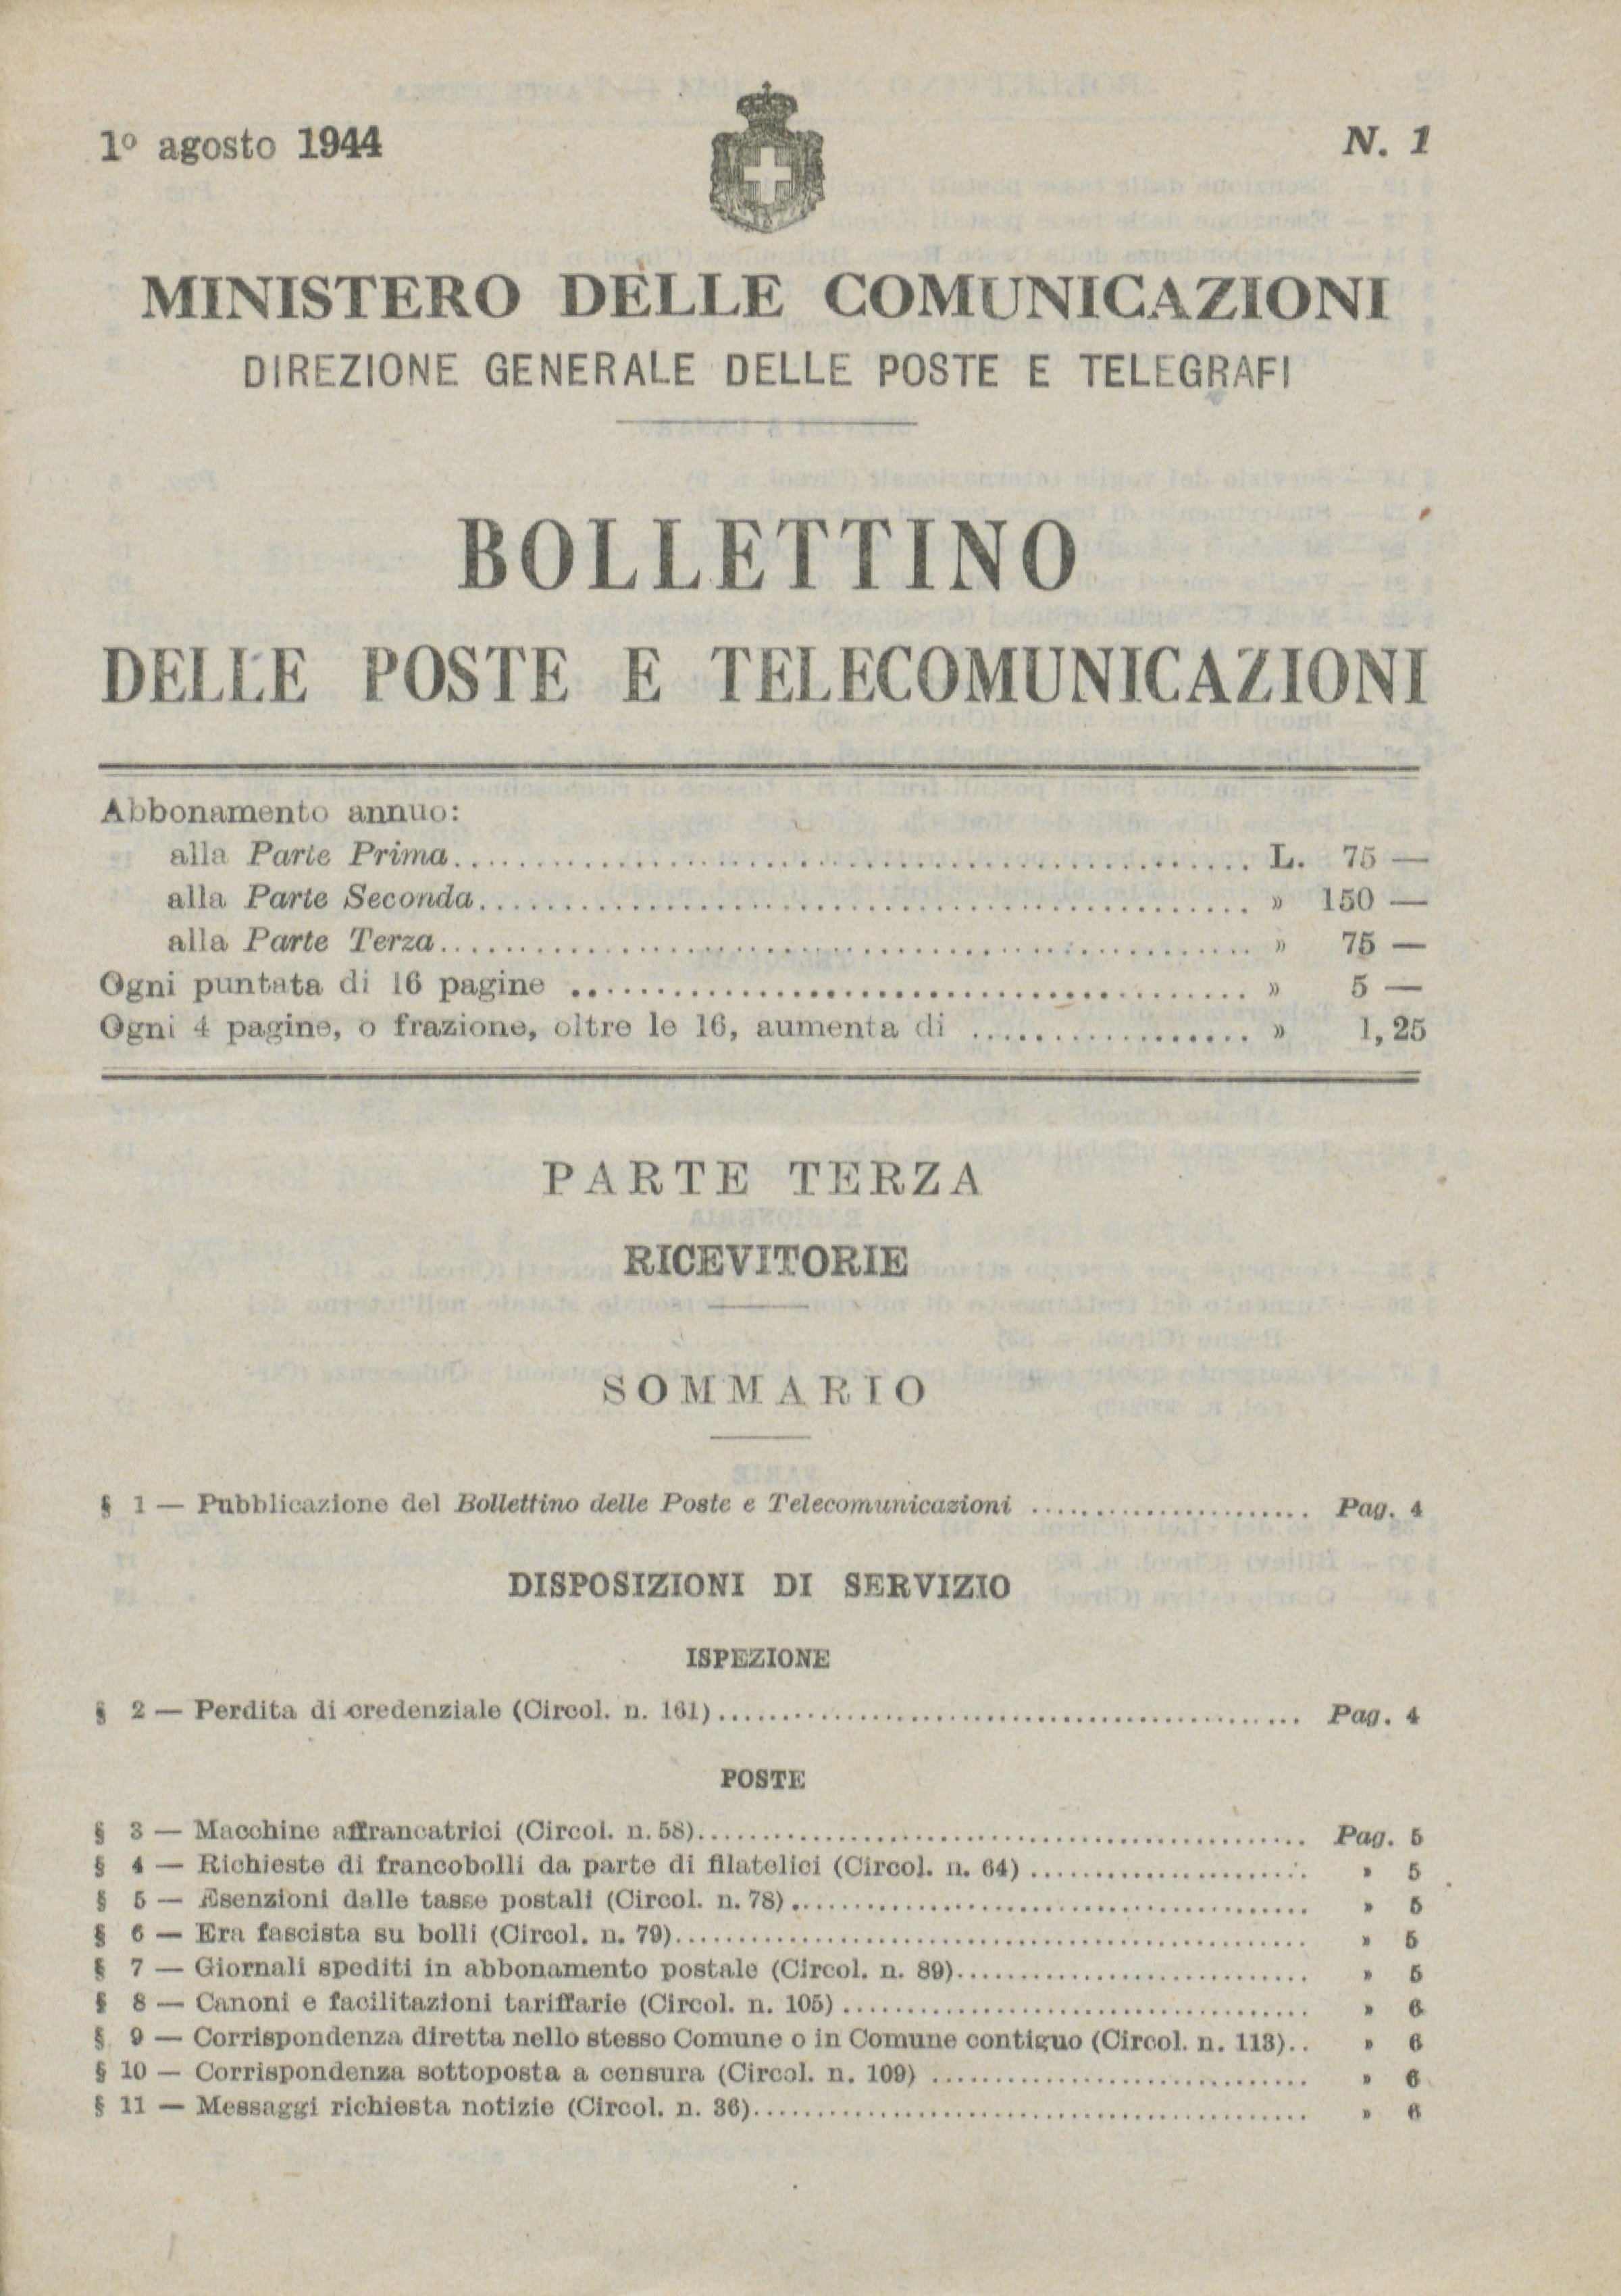 Pubblicazioni dell’Amministrazione postale italiana